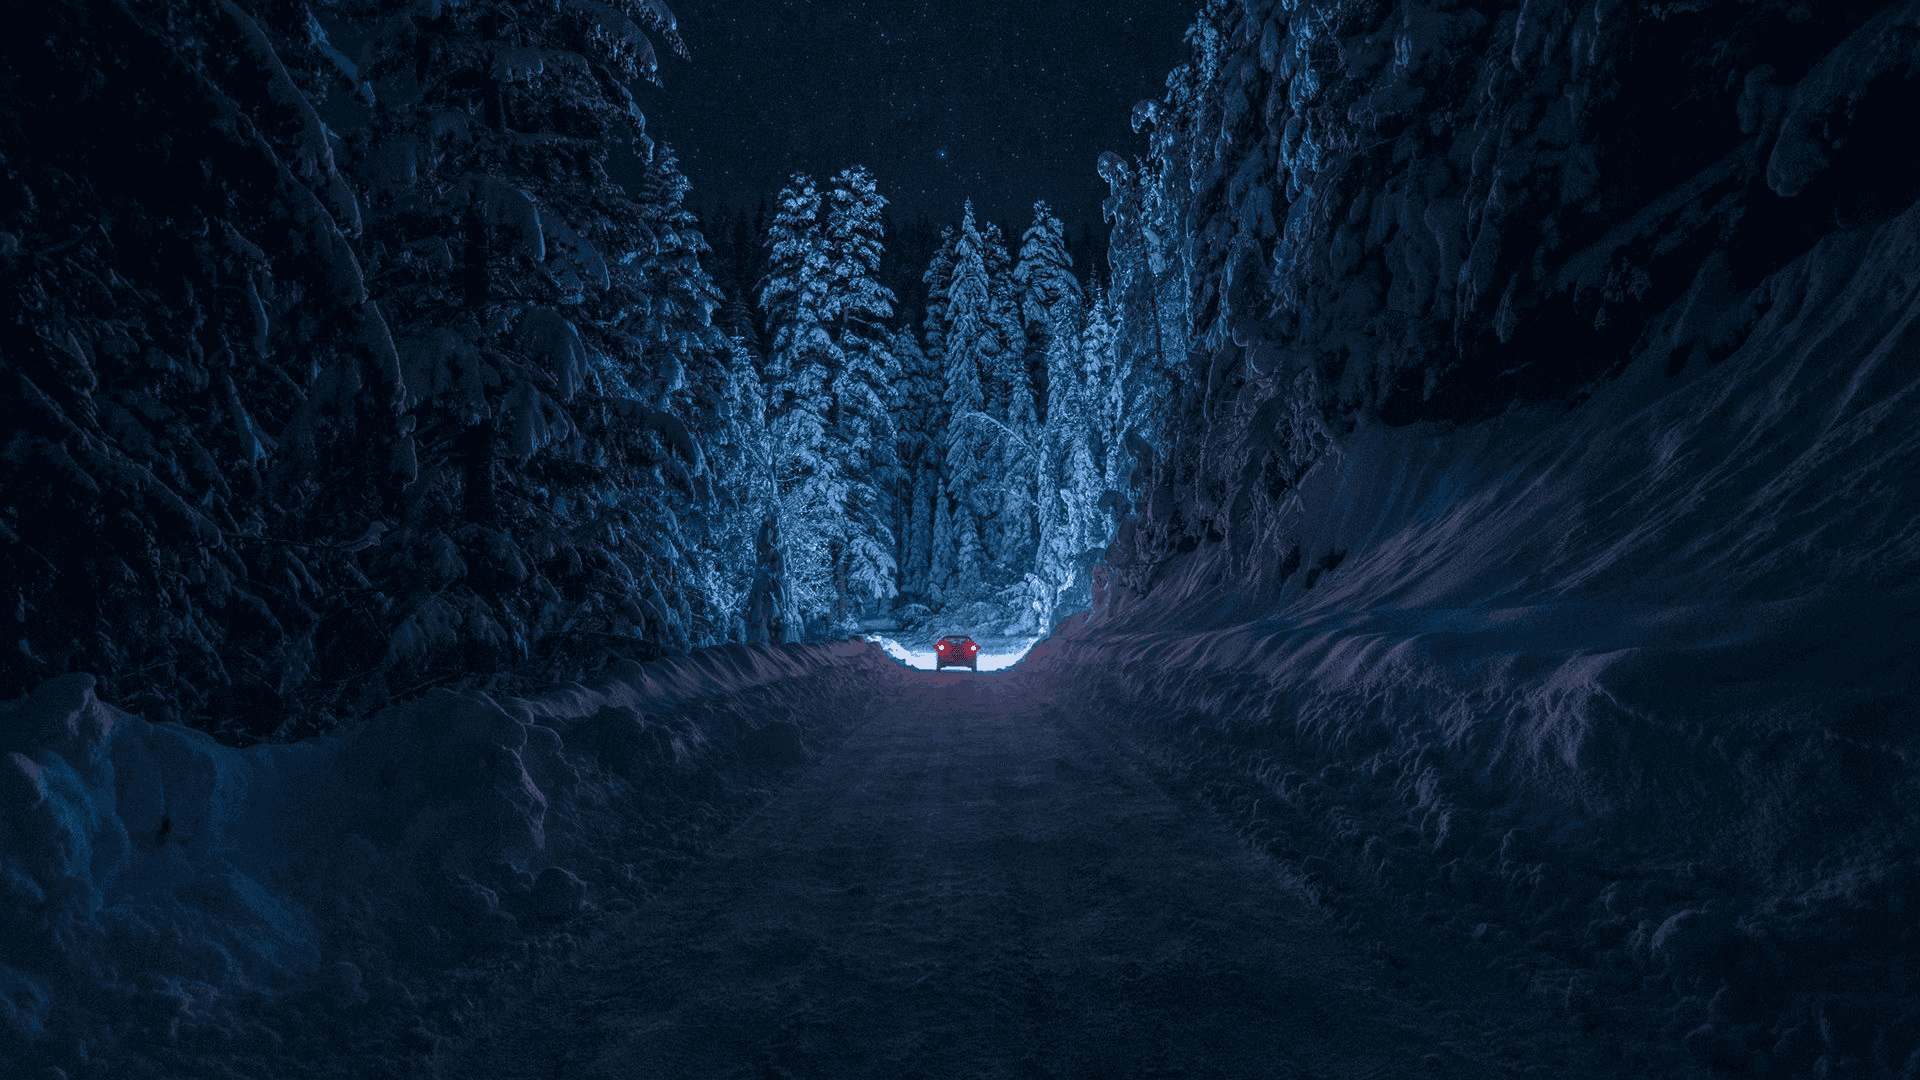 Eineverschneite Straße Mit Einem Blauen Licht In Der Mitte.